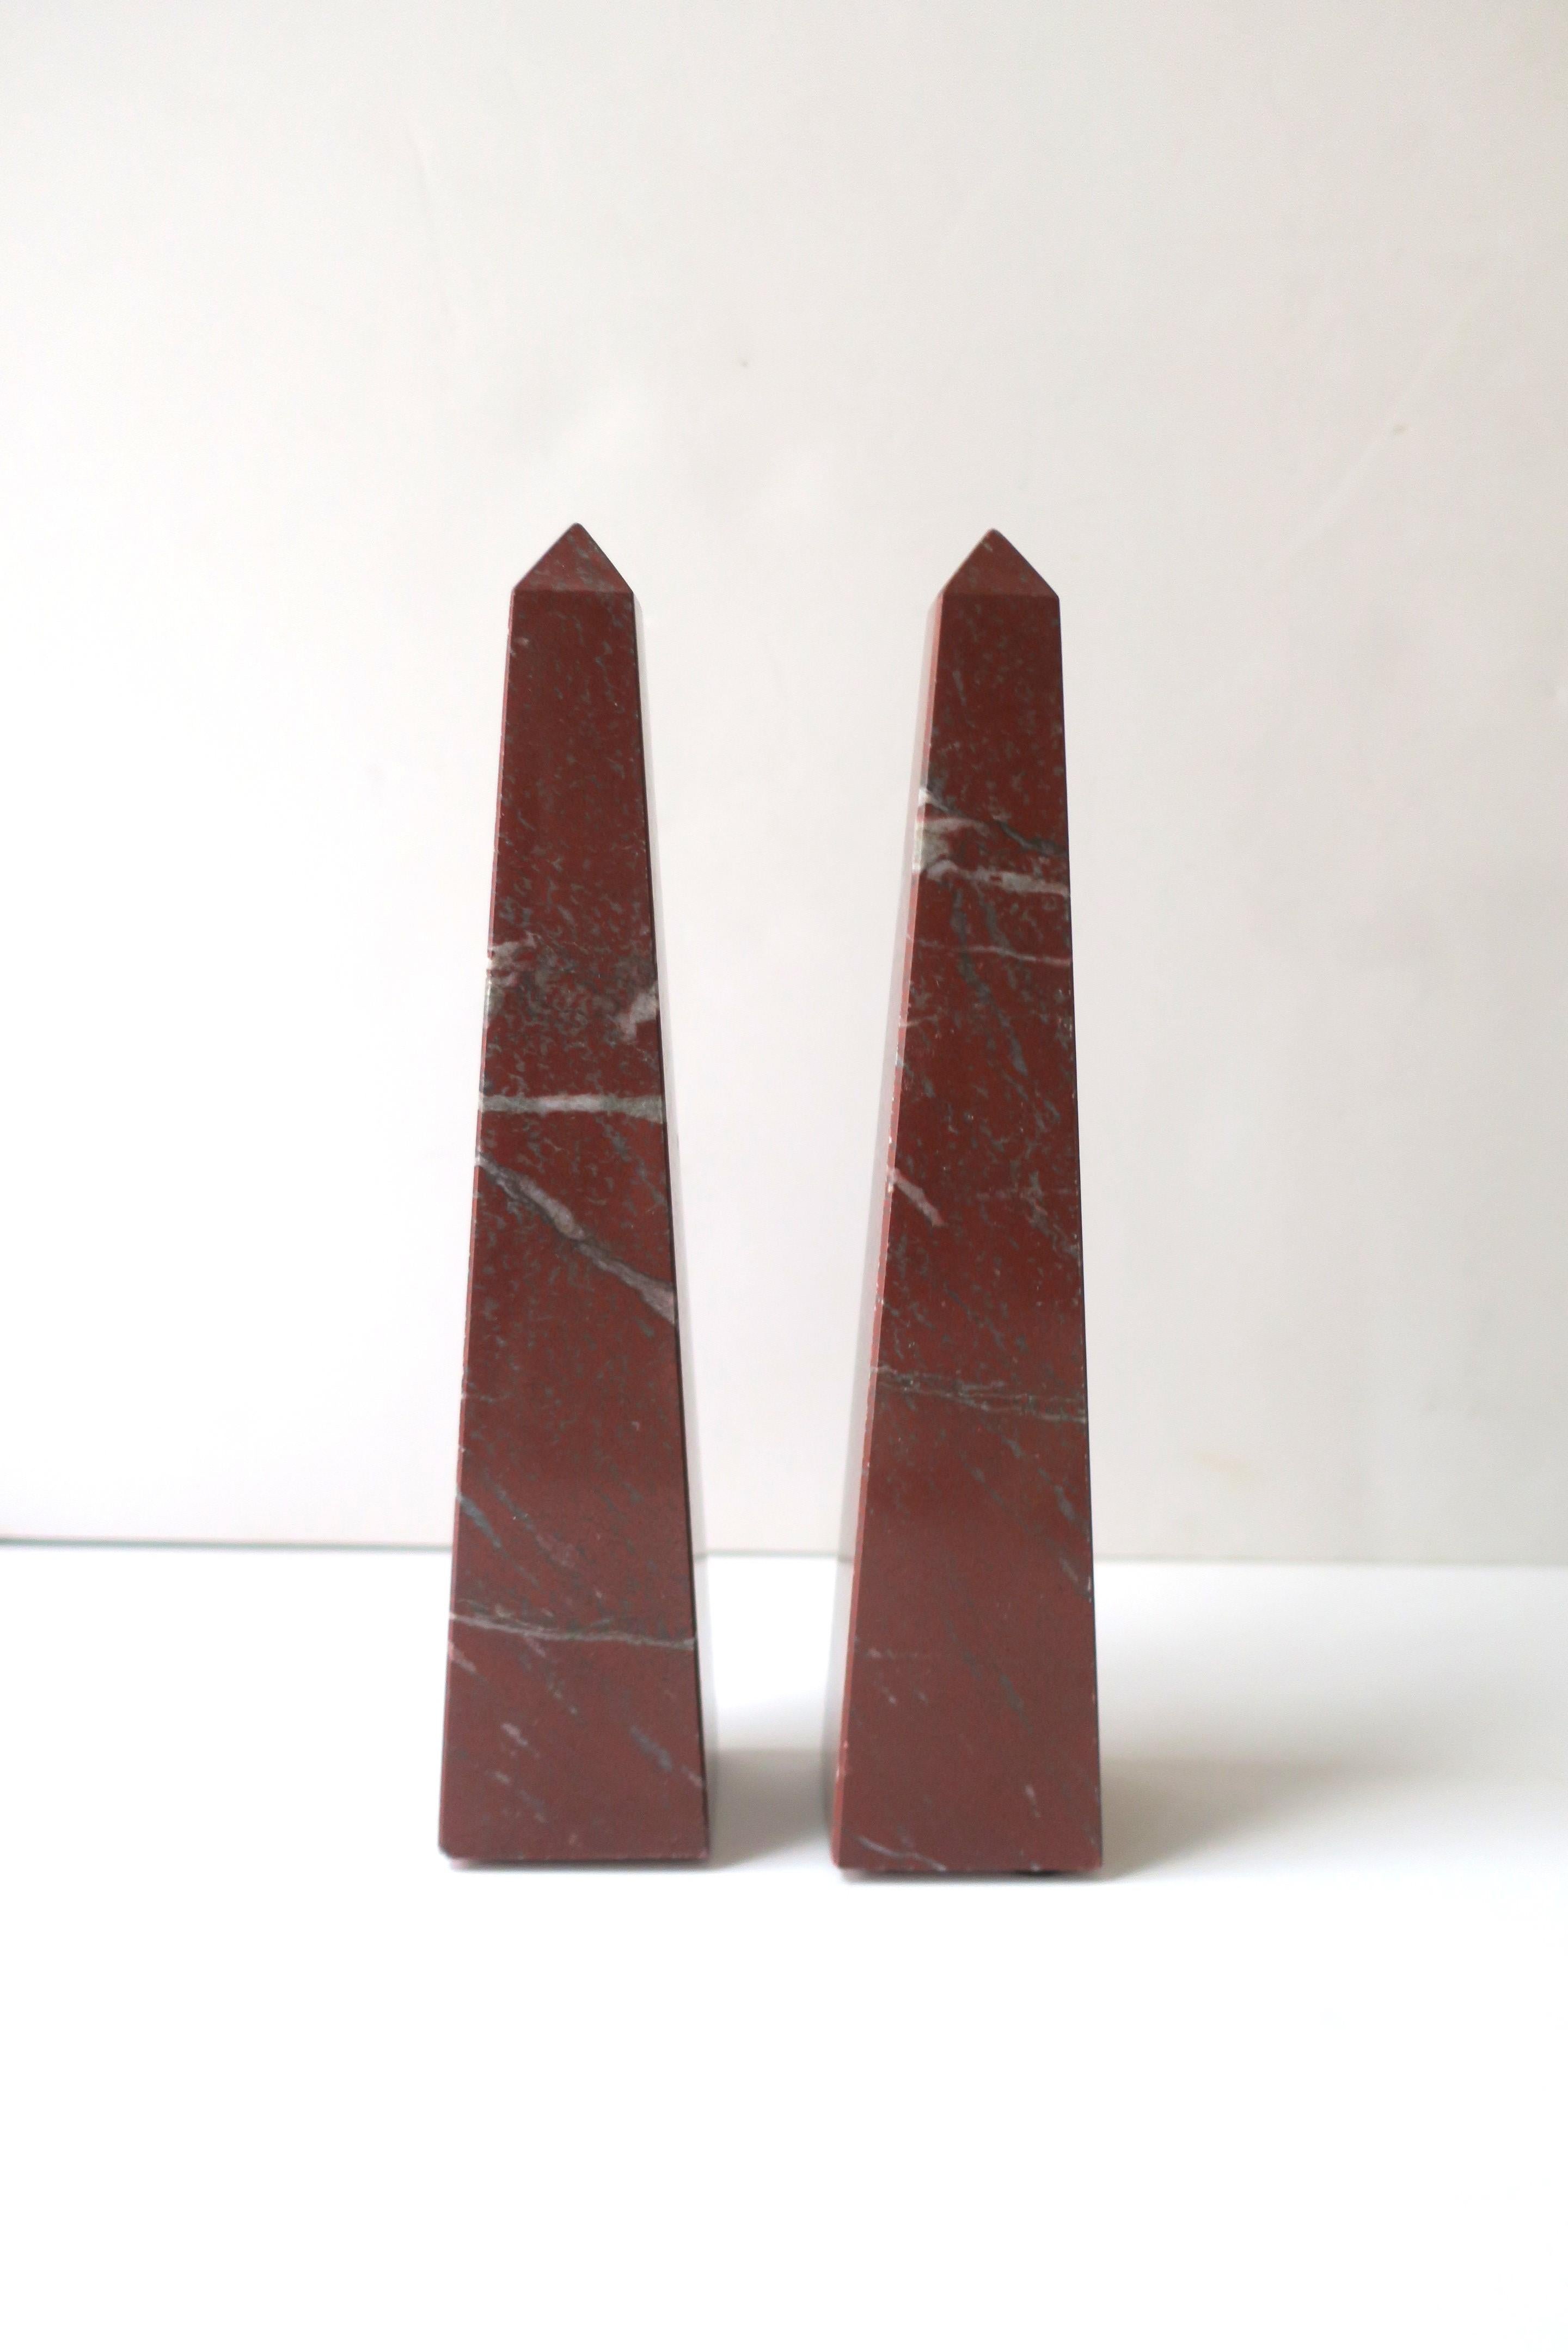 Modern Italian Red Burgundy Marble Obelisks, Pair For Sale